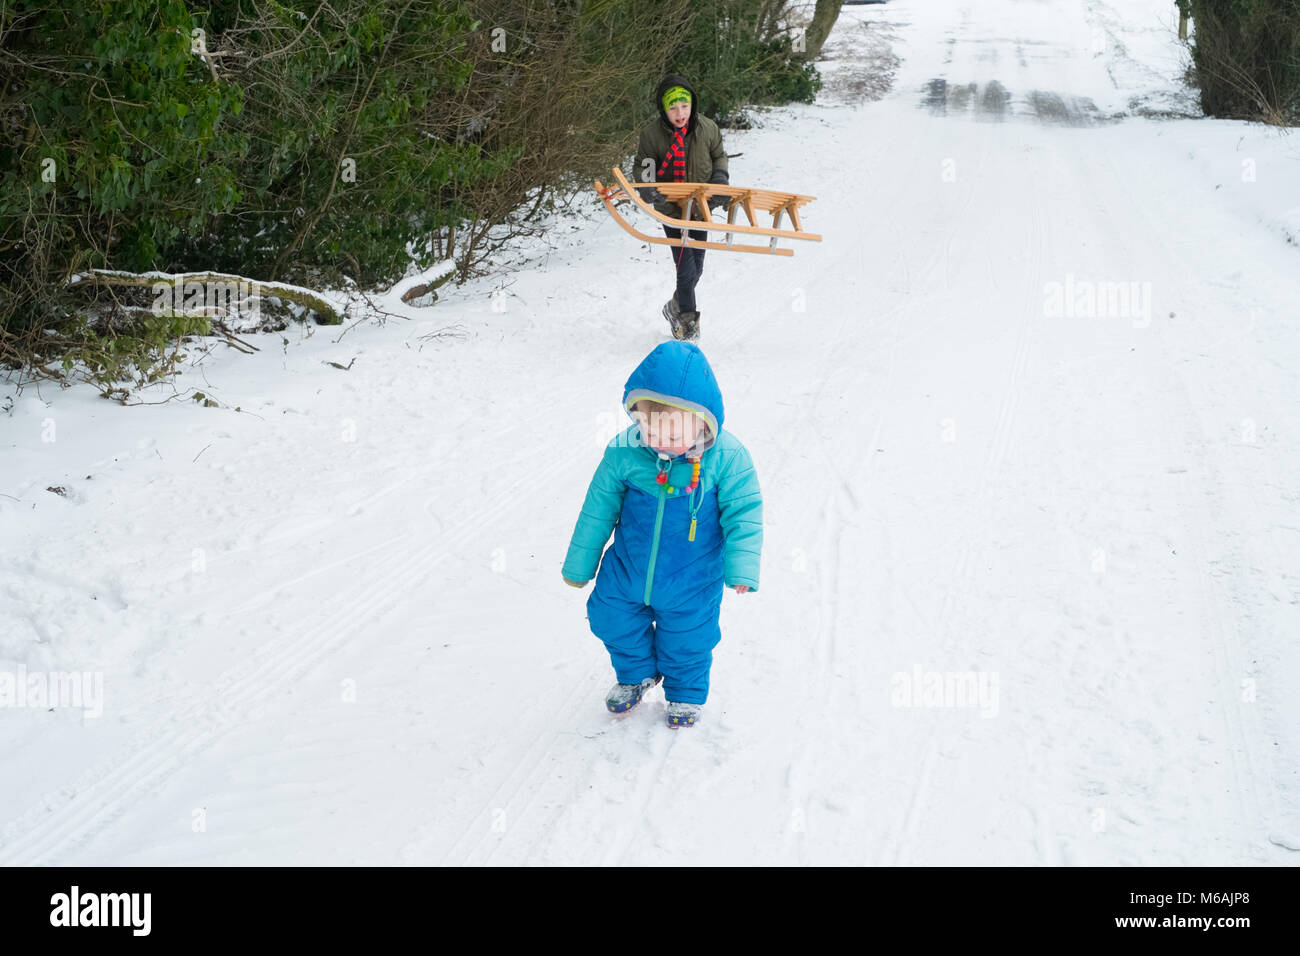 Garçon de huit ans et son frère âgé de 18 mois. La luge ou de la luge dans la neige , Medstead, Alton, Hampshire, Angleterre, Royaume-Uni. Banque D'Images